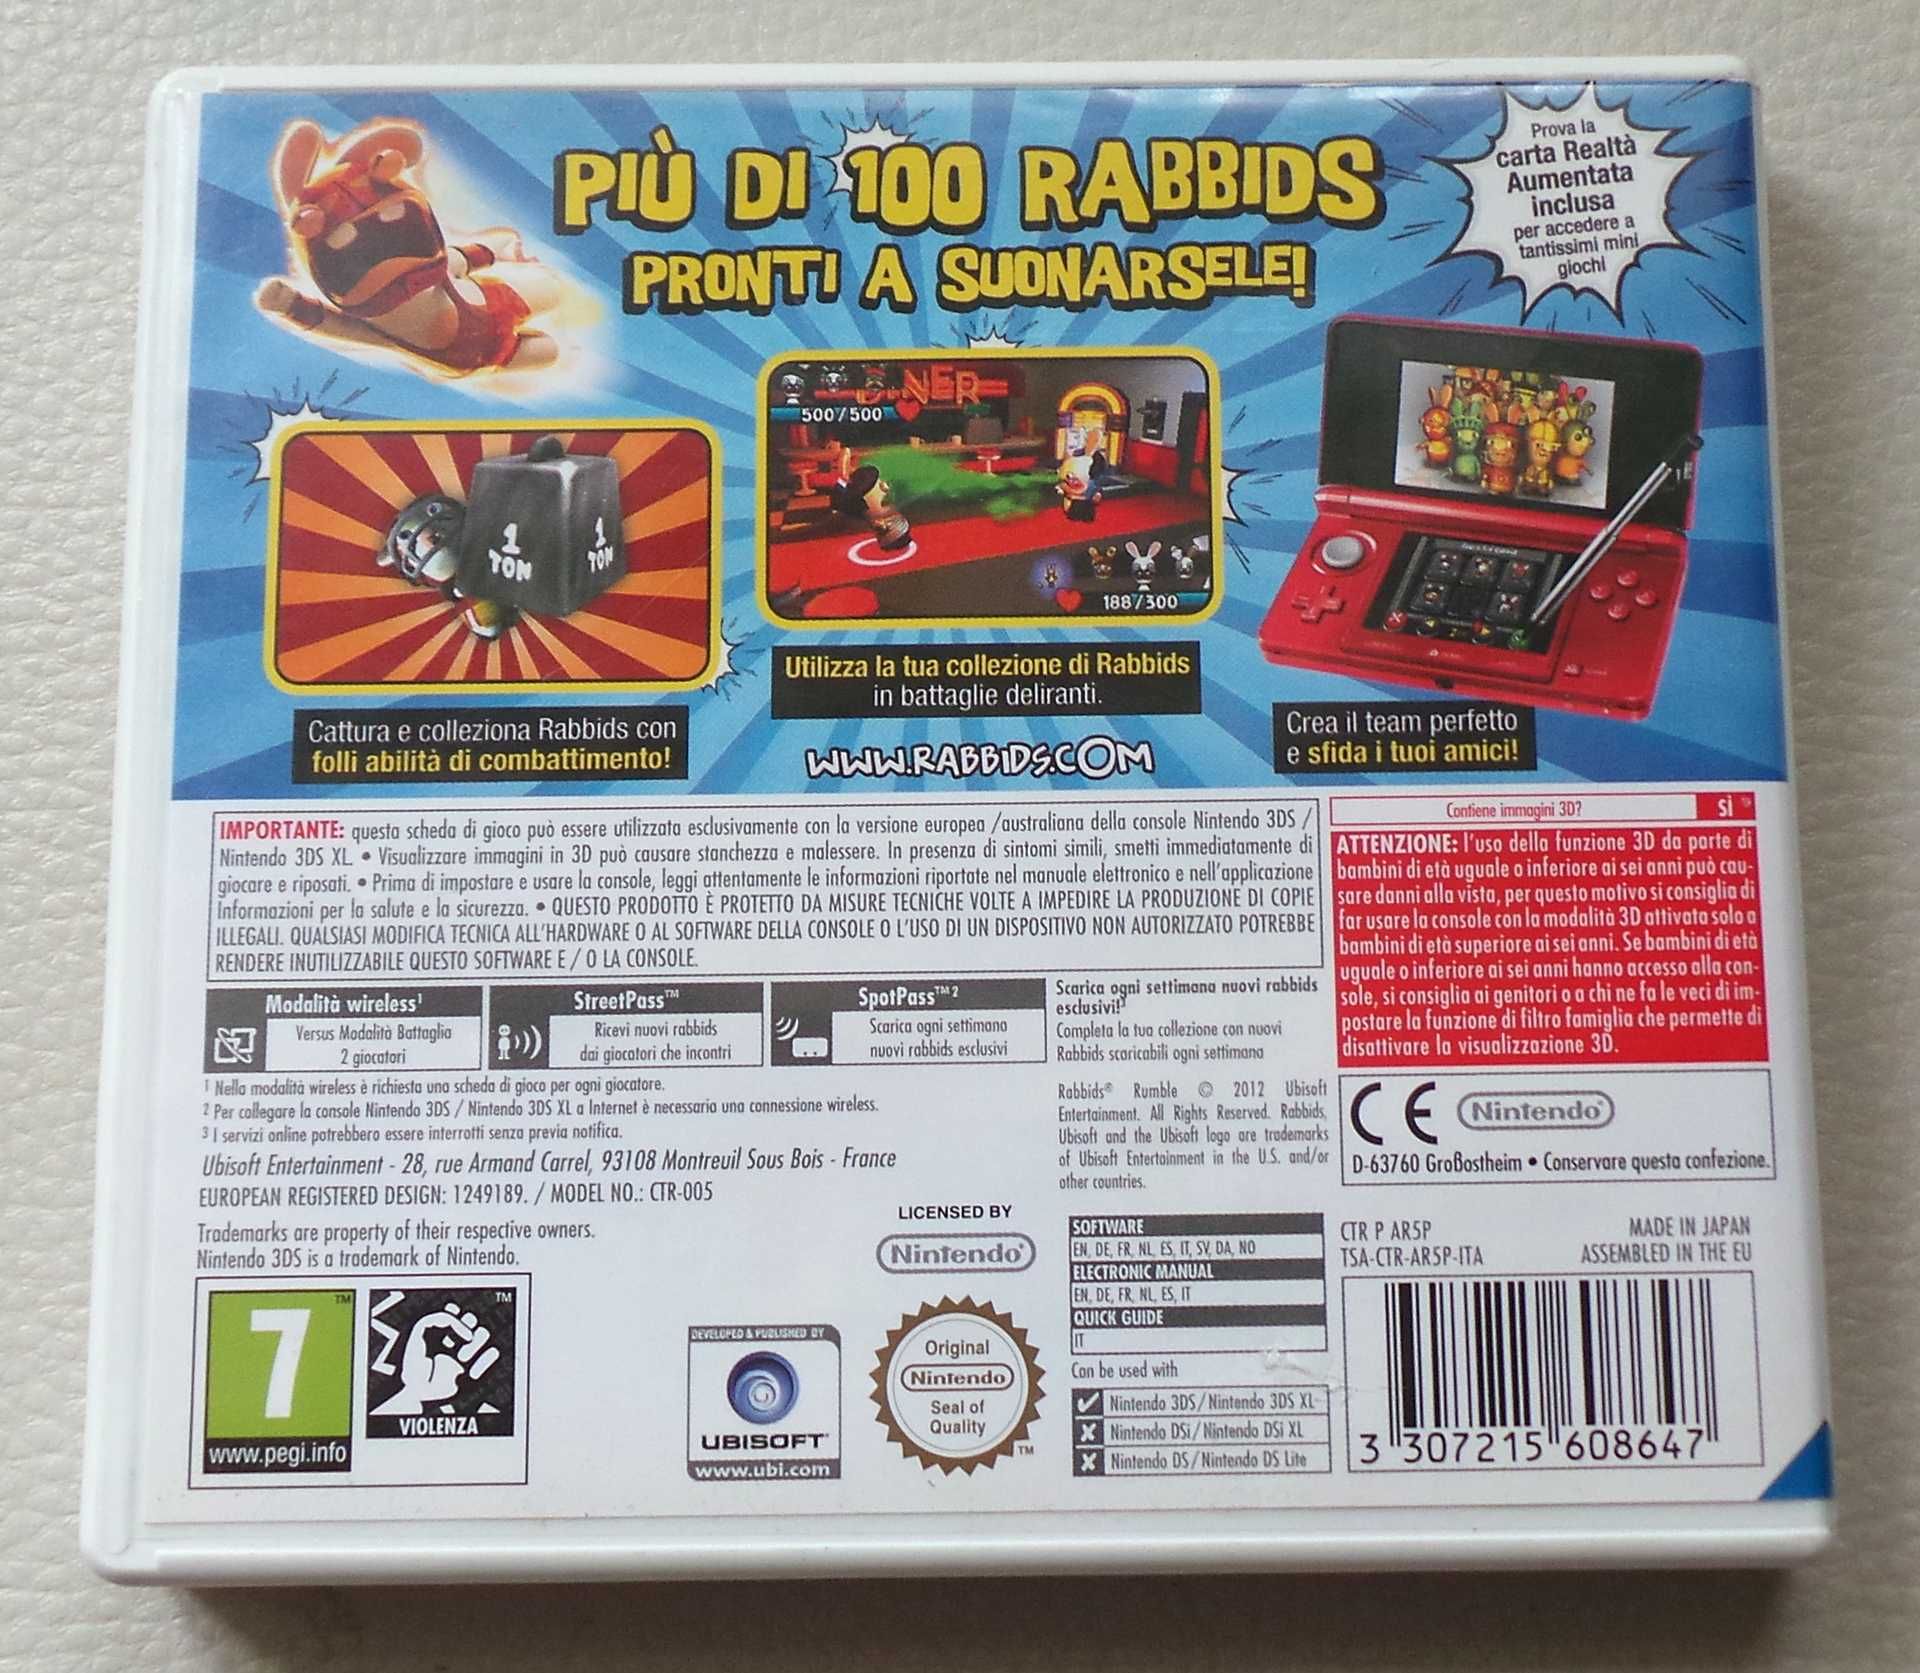 Joc RABBIDS Rumble Nintendo 3DS